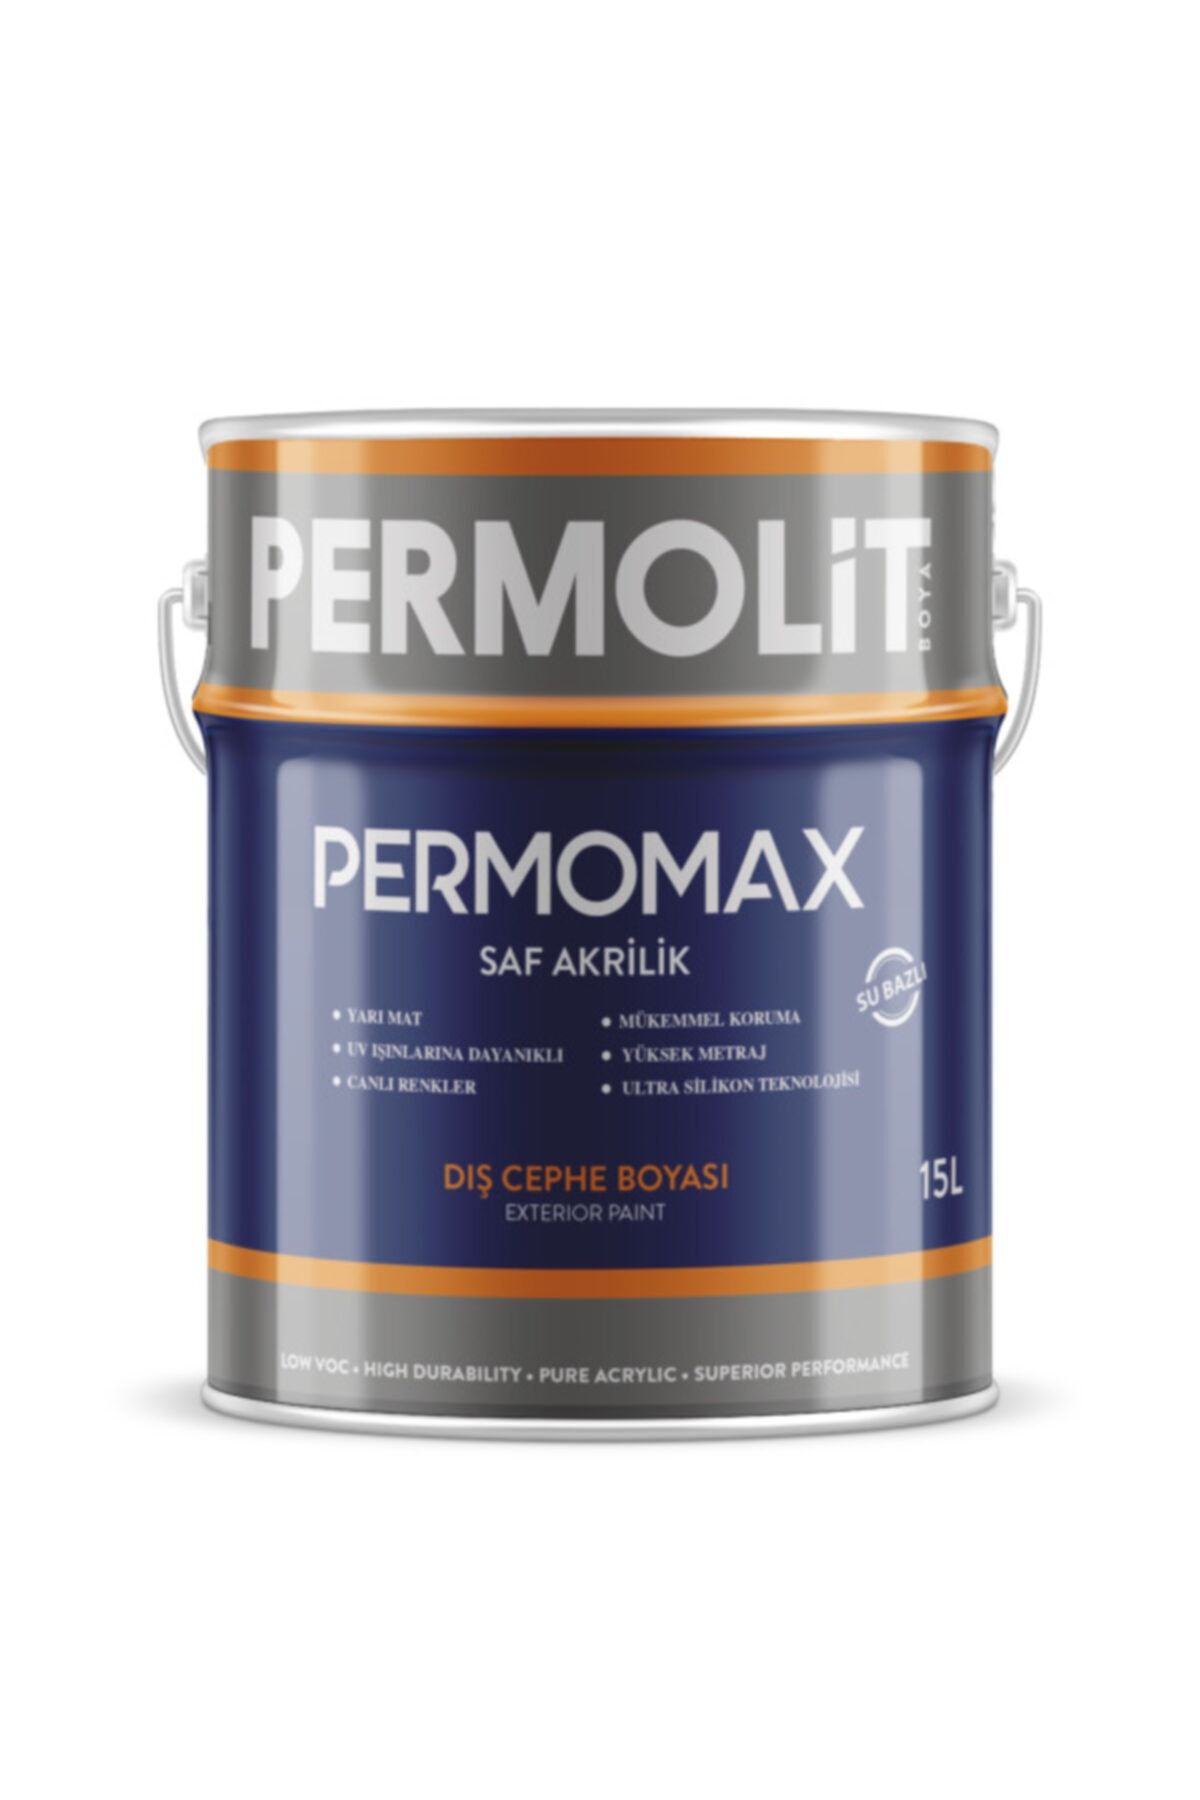 Permolit Permomax Silikonlu Dış Cephe Boyası Beyaz 20 Kg